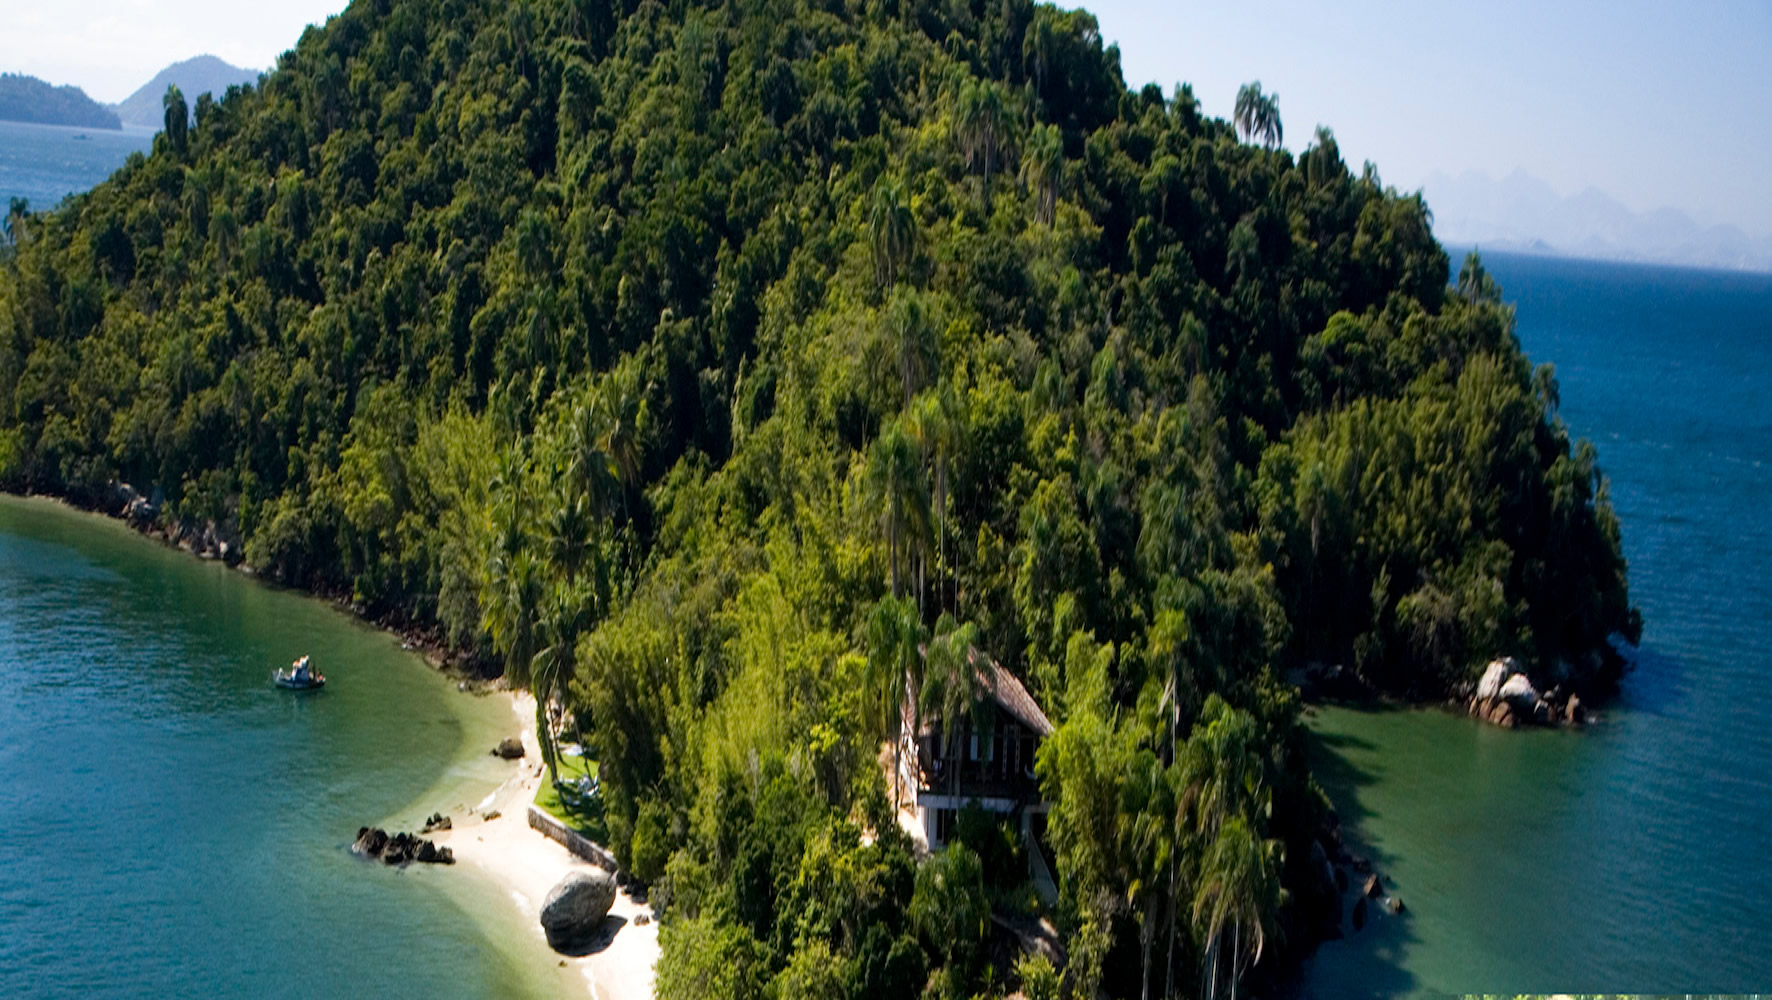 Isla Bonita - Brazil, South America - Private Islands for Sale